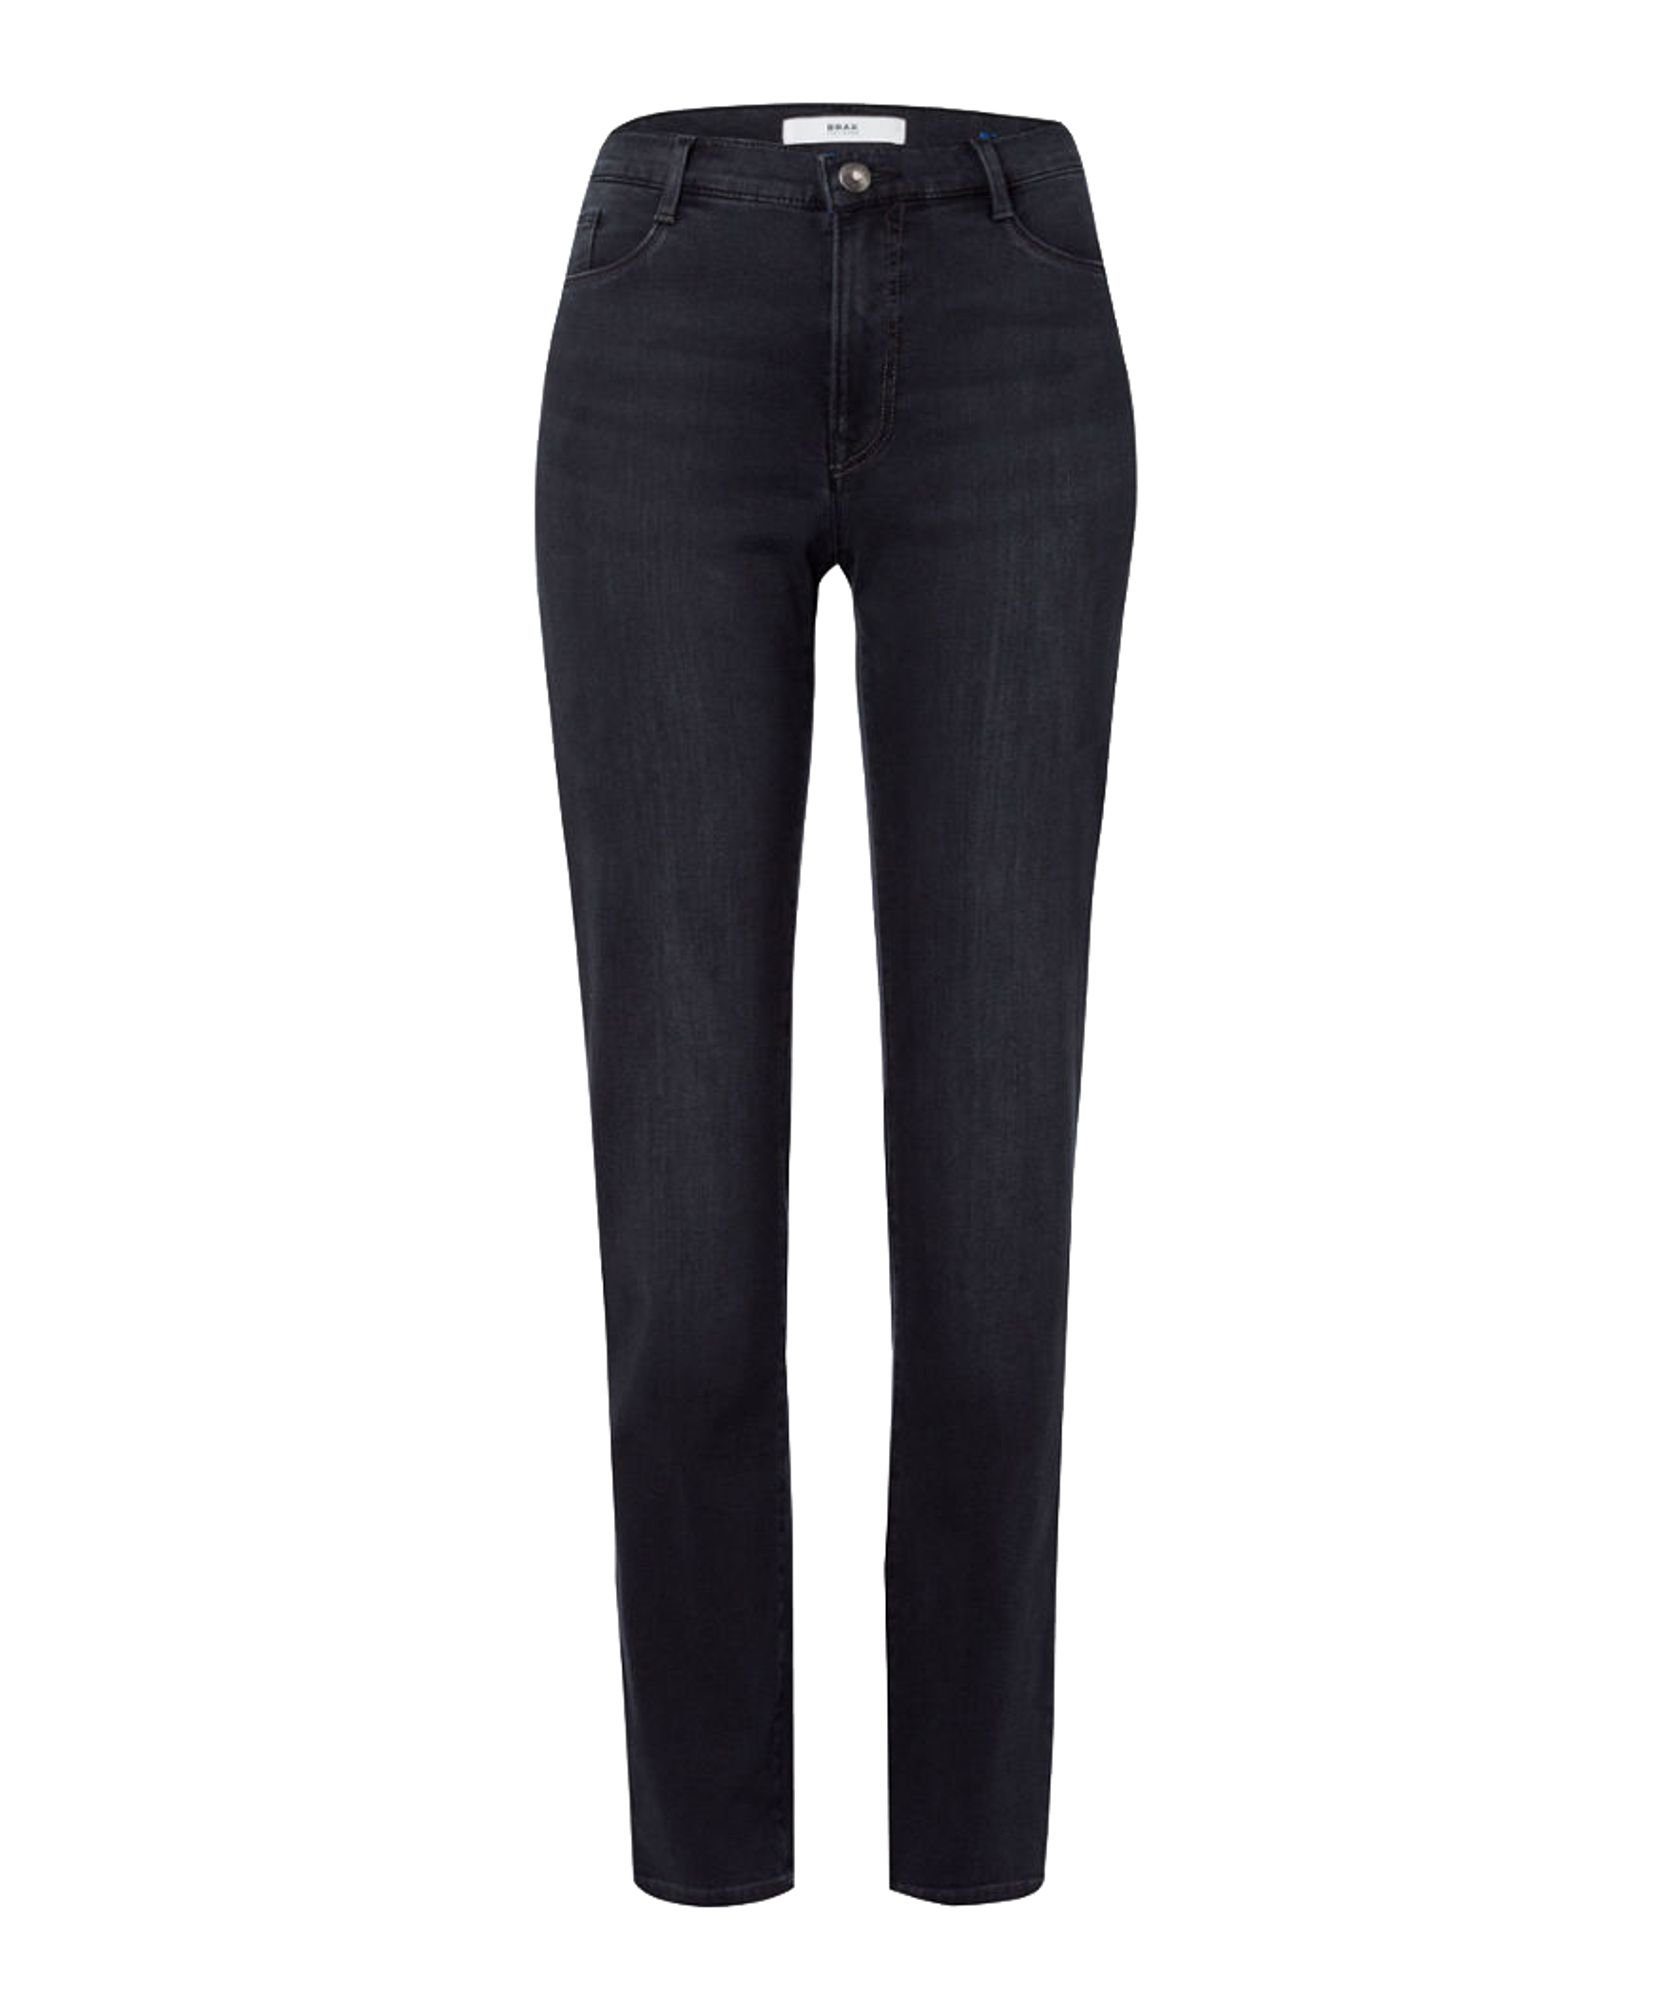 70-4000 used (03) black 5-Pocket-Jeans Brax